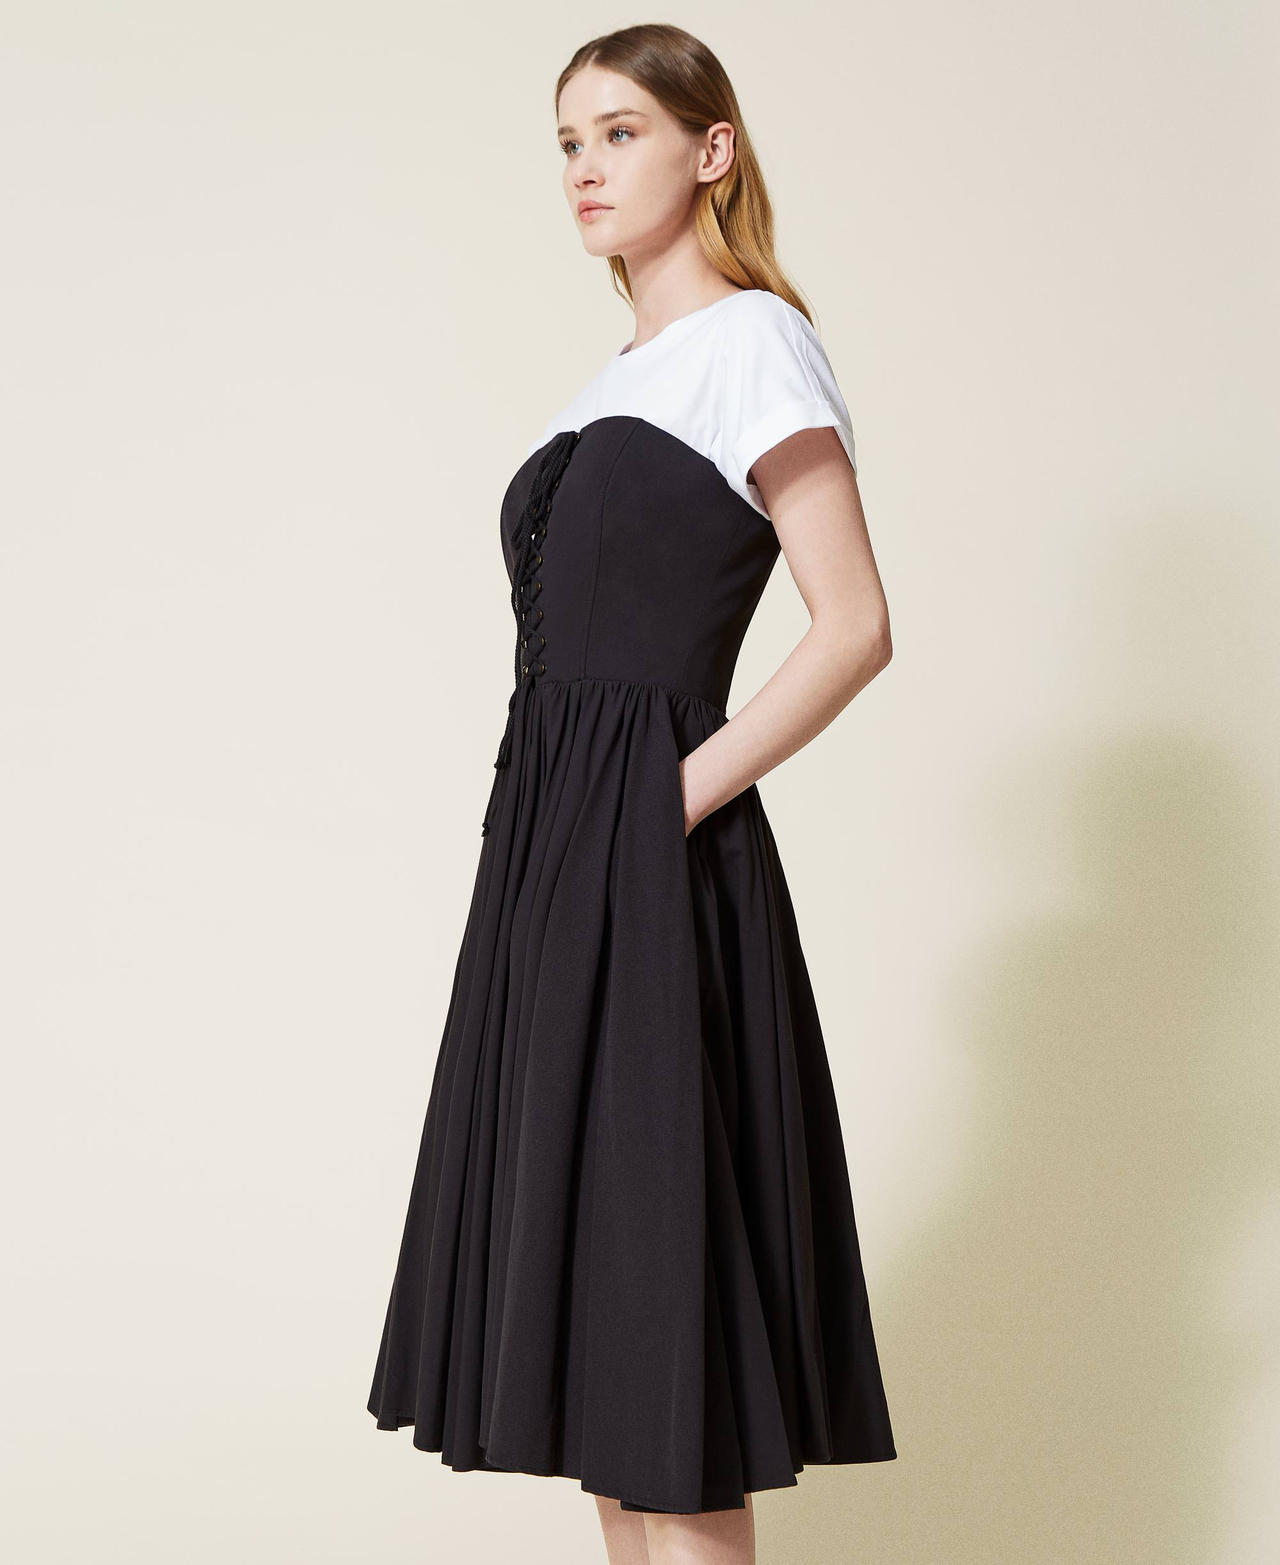 Robe mi-longue avec finition croisée et t-shirt Bicolore Noir / Blanc Optique Femme 221TT2090-03